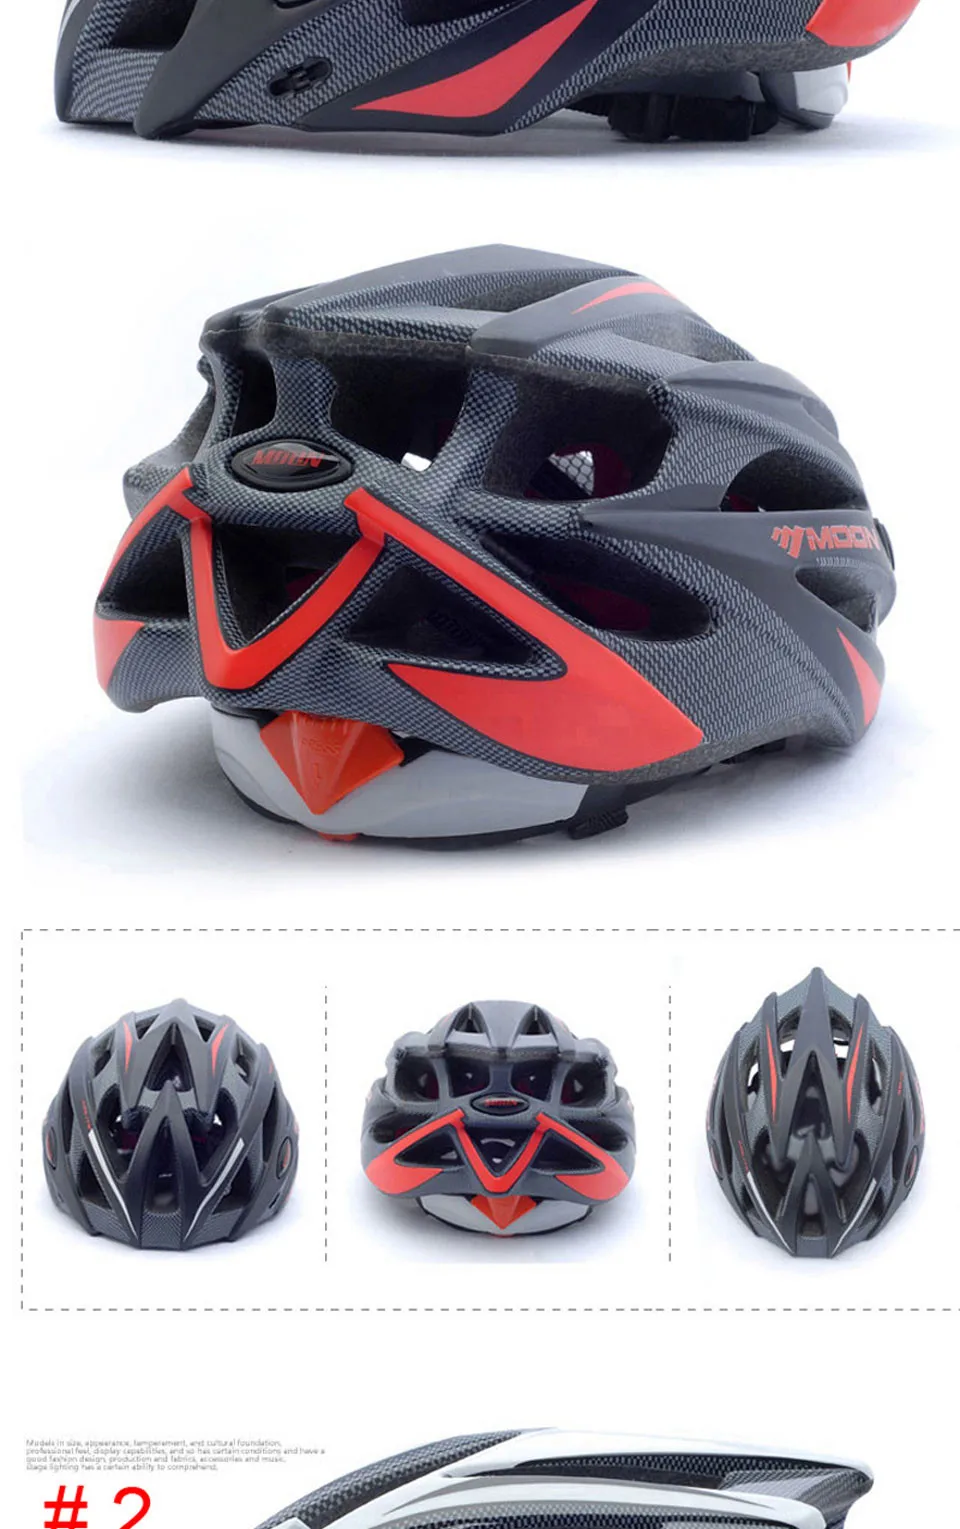 MOON Child велосипедный шлем ультралегкий PC+ EPS велосипедный шлем цельно-Формованный дорожный горный велосипедный шлем 3 цвета CE сертификация